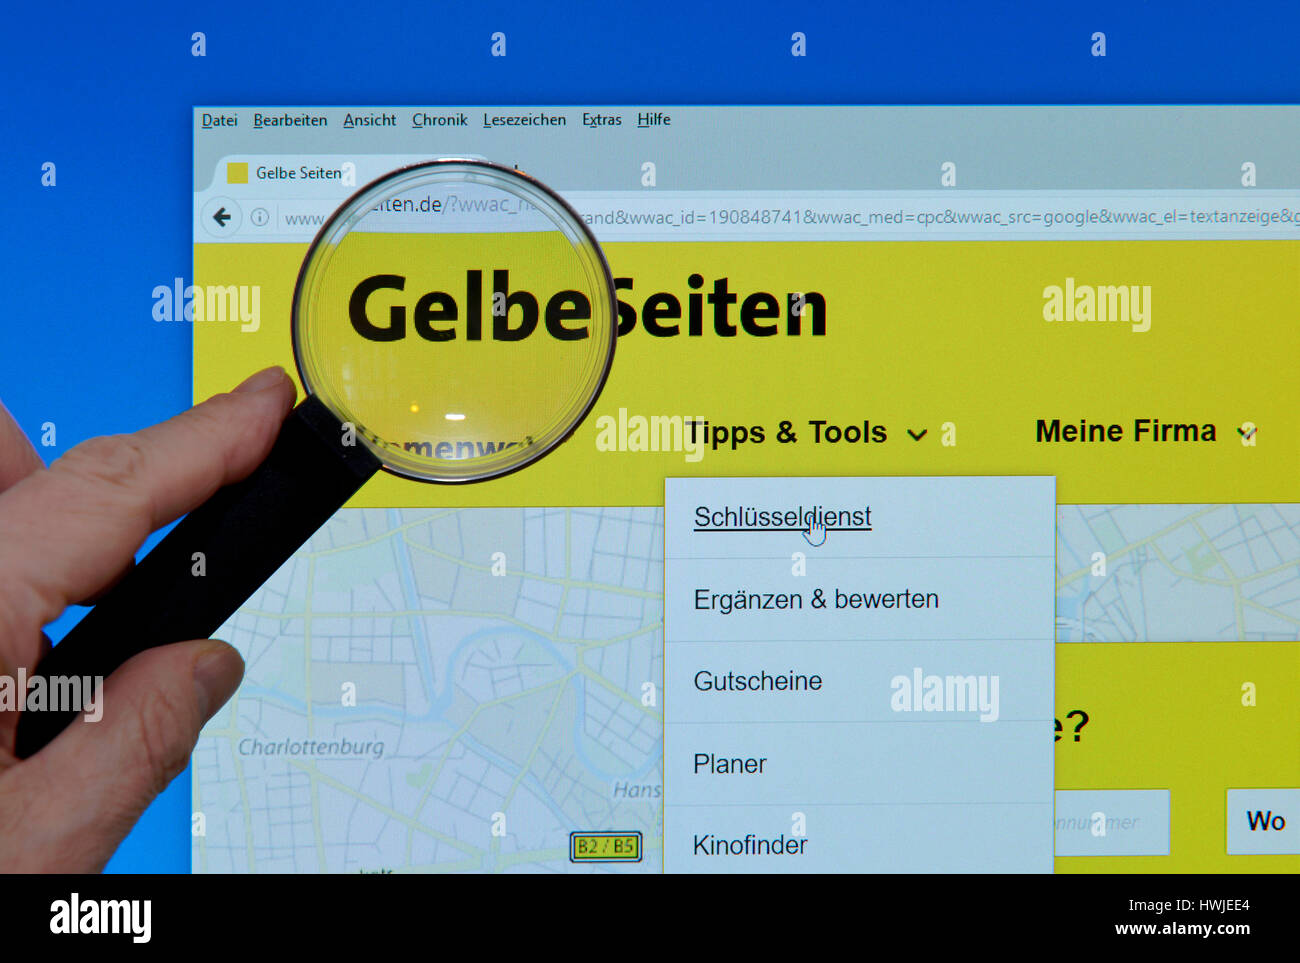 gelbeseiten.de, Website, Bildschirm, Lupe, Gelbe Seiten Stock Photo